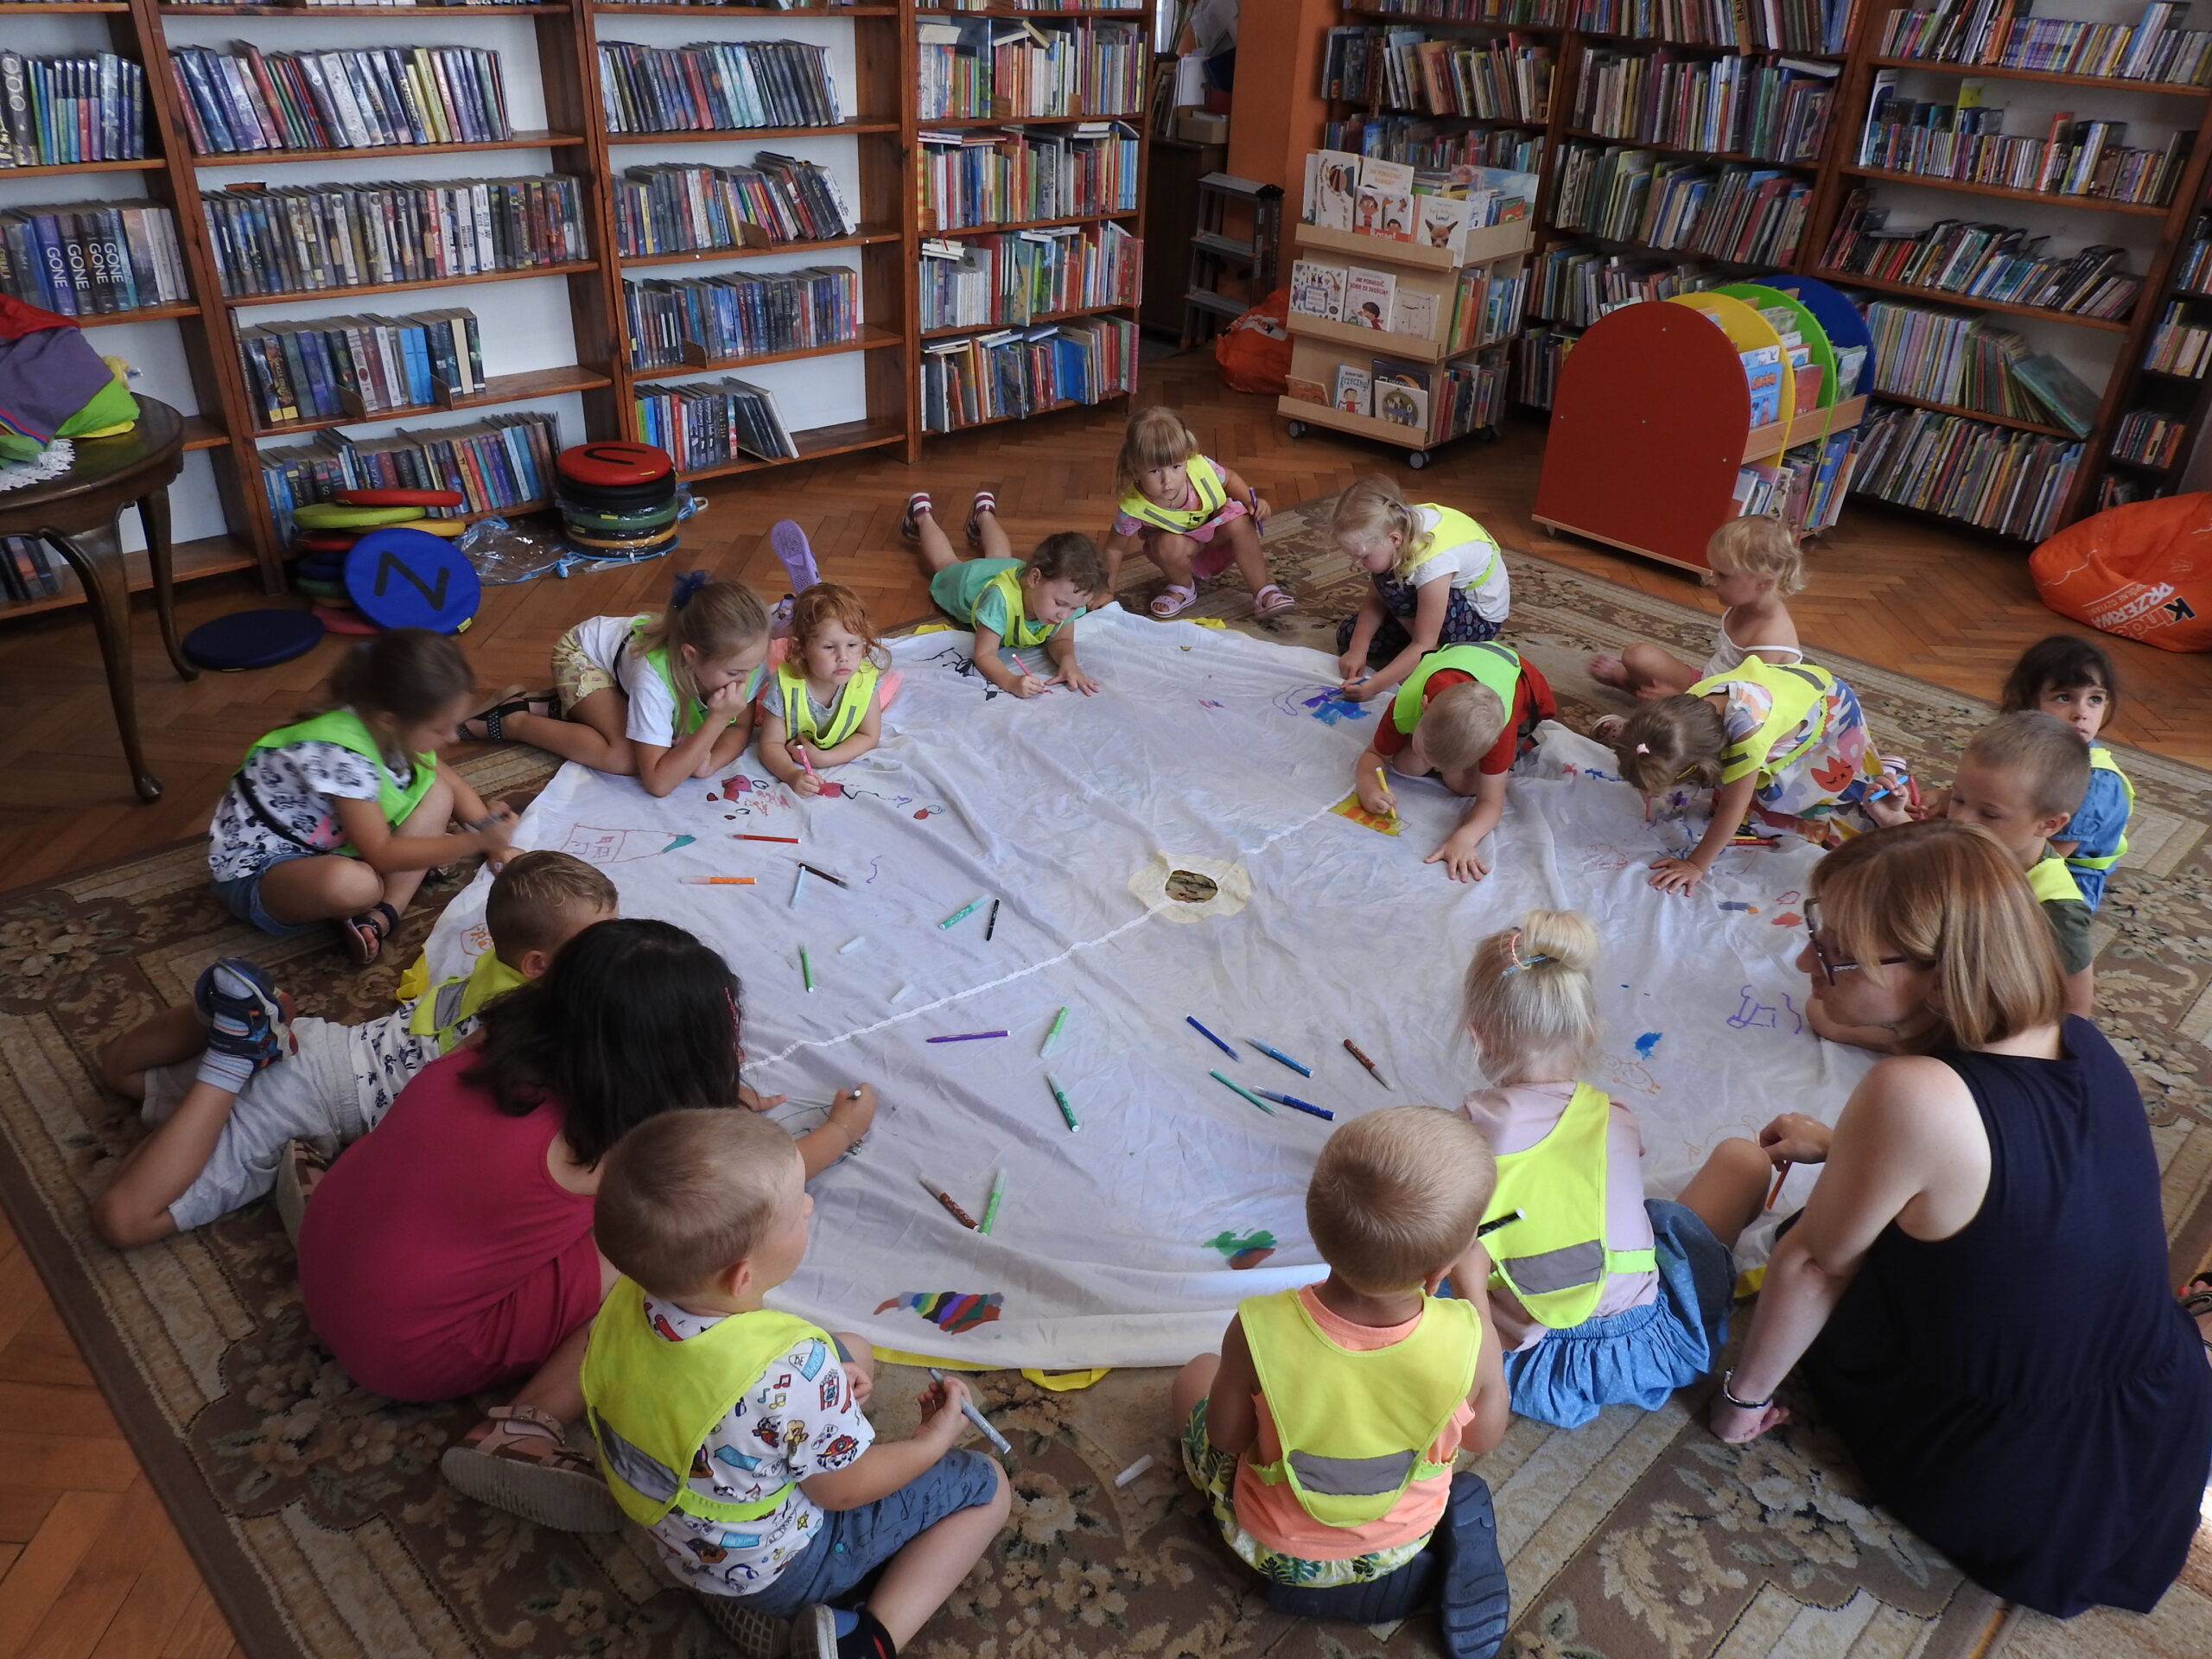 Grupa dzieci w kamizelkach odblaskowych siedzi lub leży na dywanie wokół dużego, białego, okrągłego materiału, na którym leży dużo flamastrów w różnych kolorach. Dzieci malują po materiale. W tle regały z książkami.